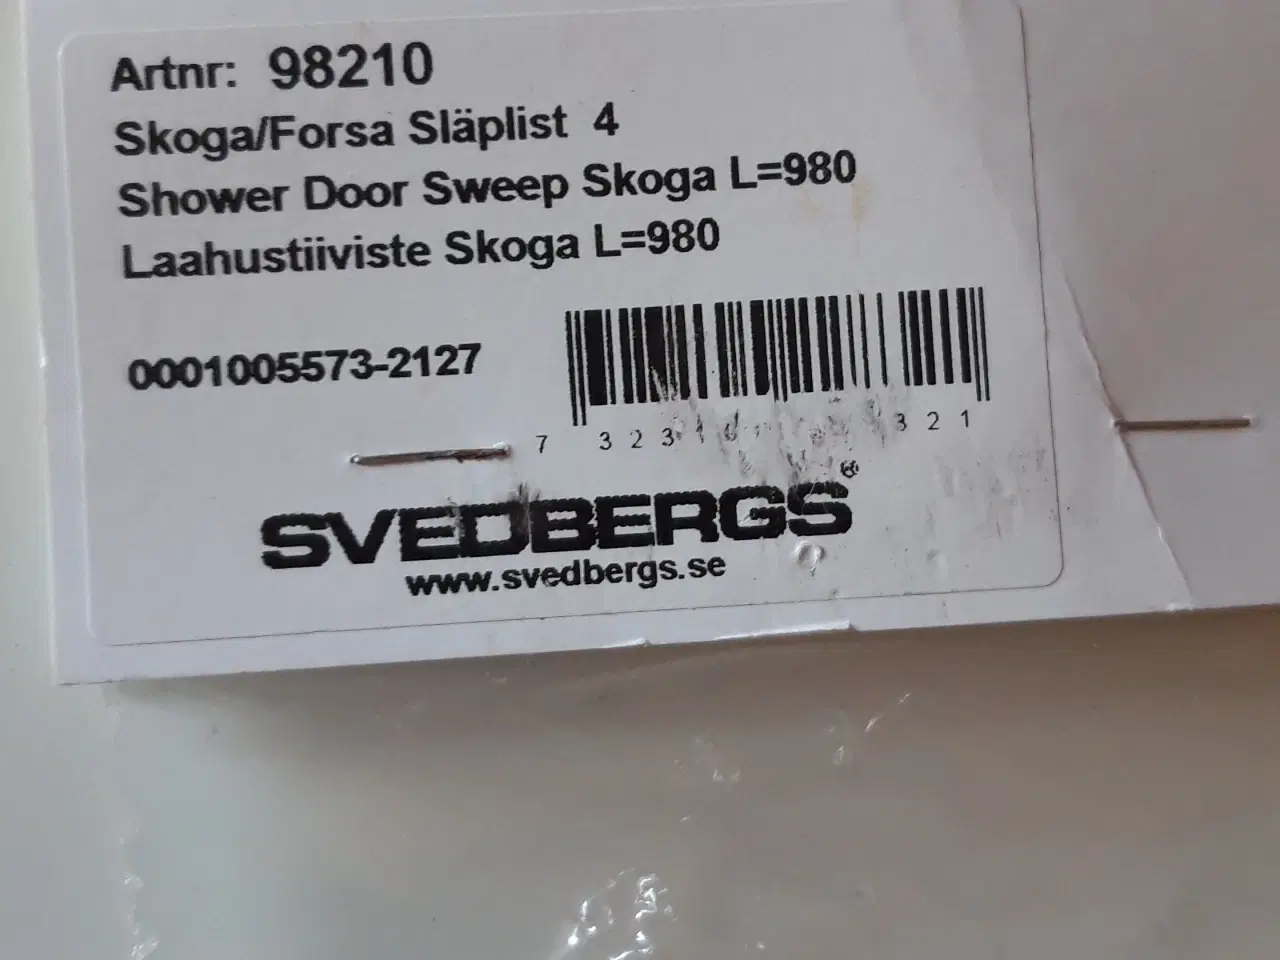 Billede 1 - Gummilister til Svedberg brusehjørne.